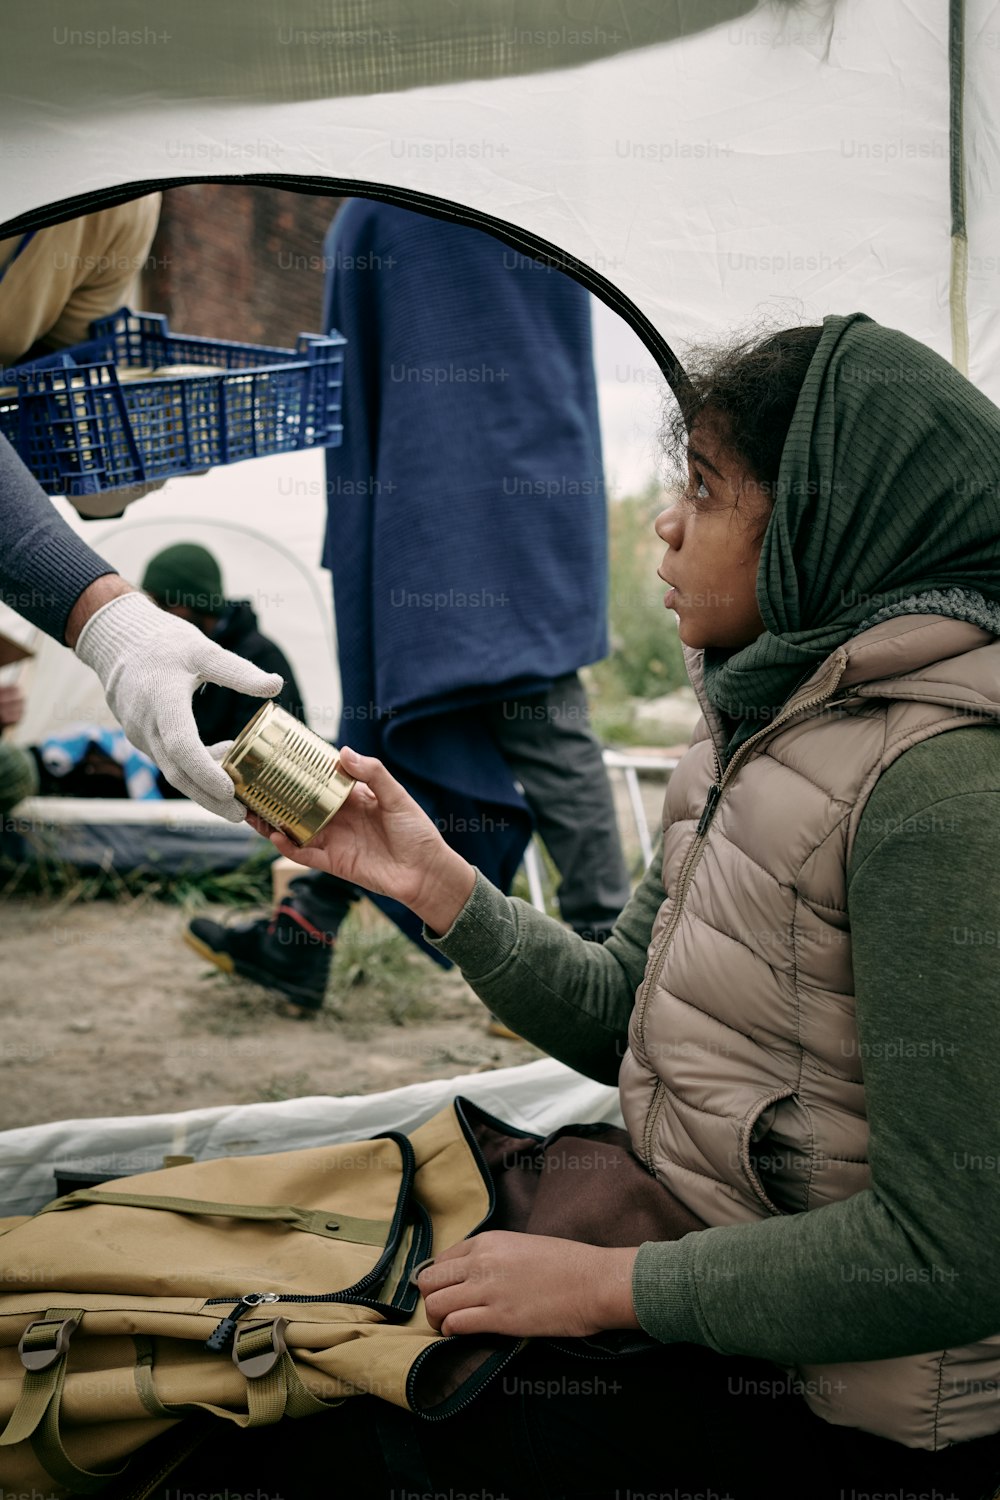 배고픈 소녀 난민은 텐트에 앉아 있는 동안 남성 자원봉사자의 장갑을 낀 손에서 통조림 음식을 가져가고 있다